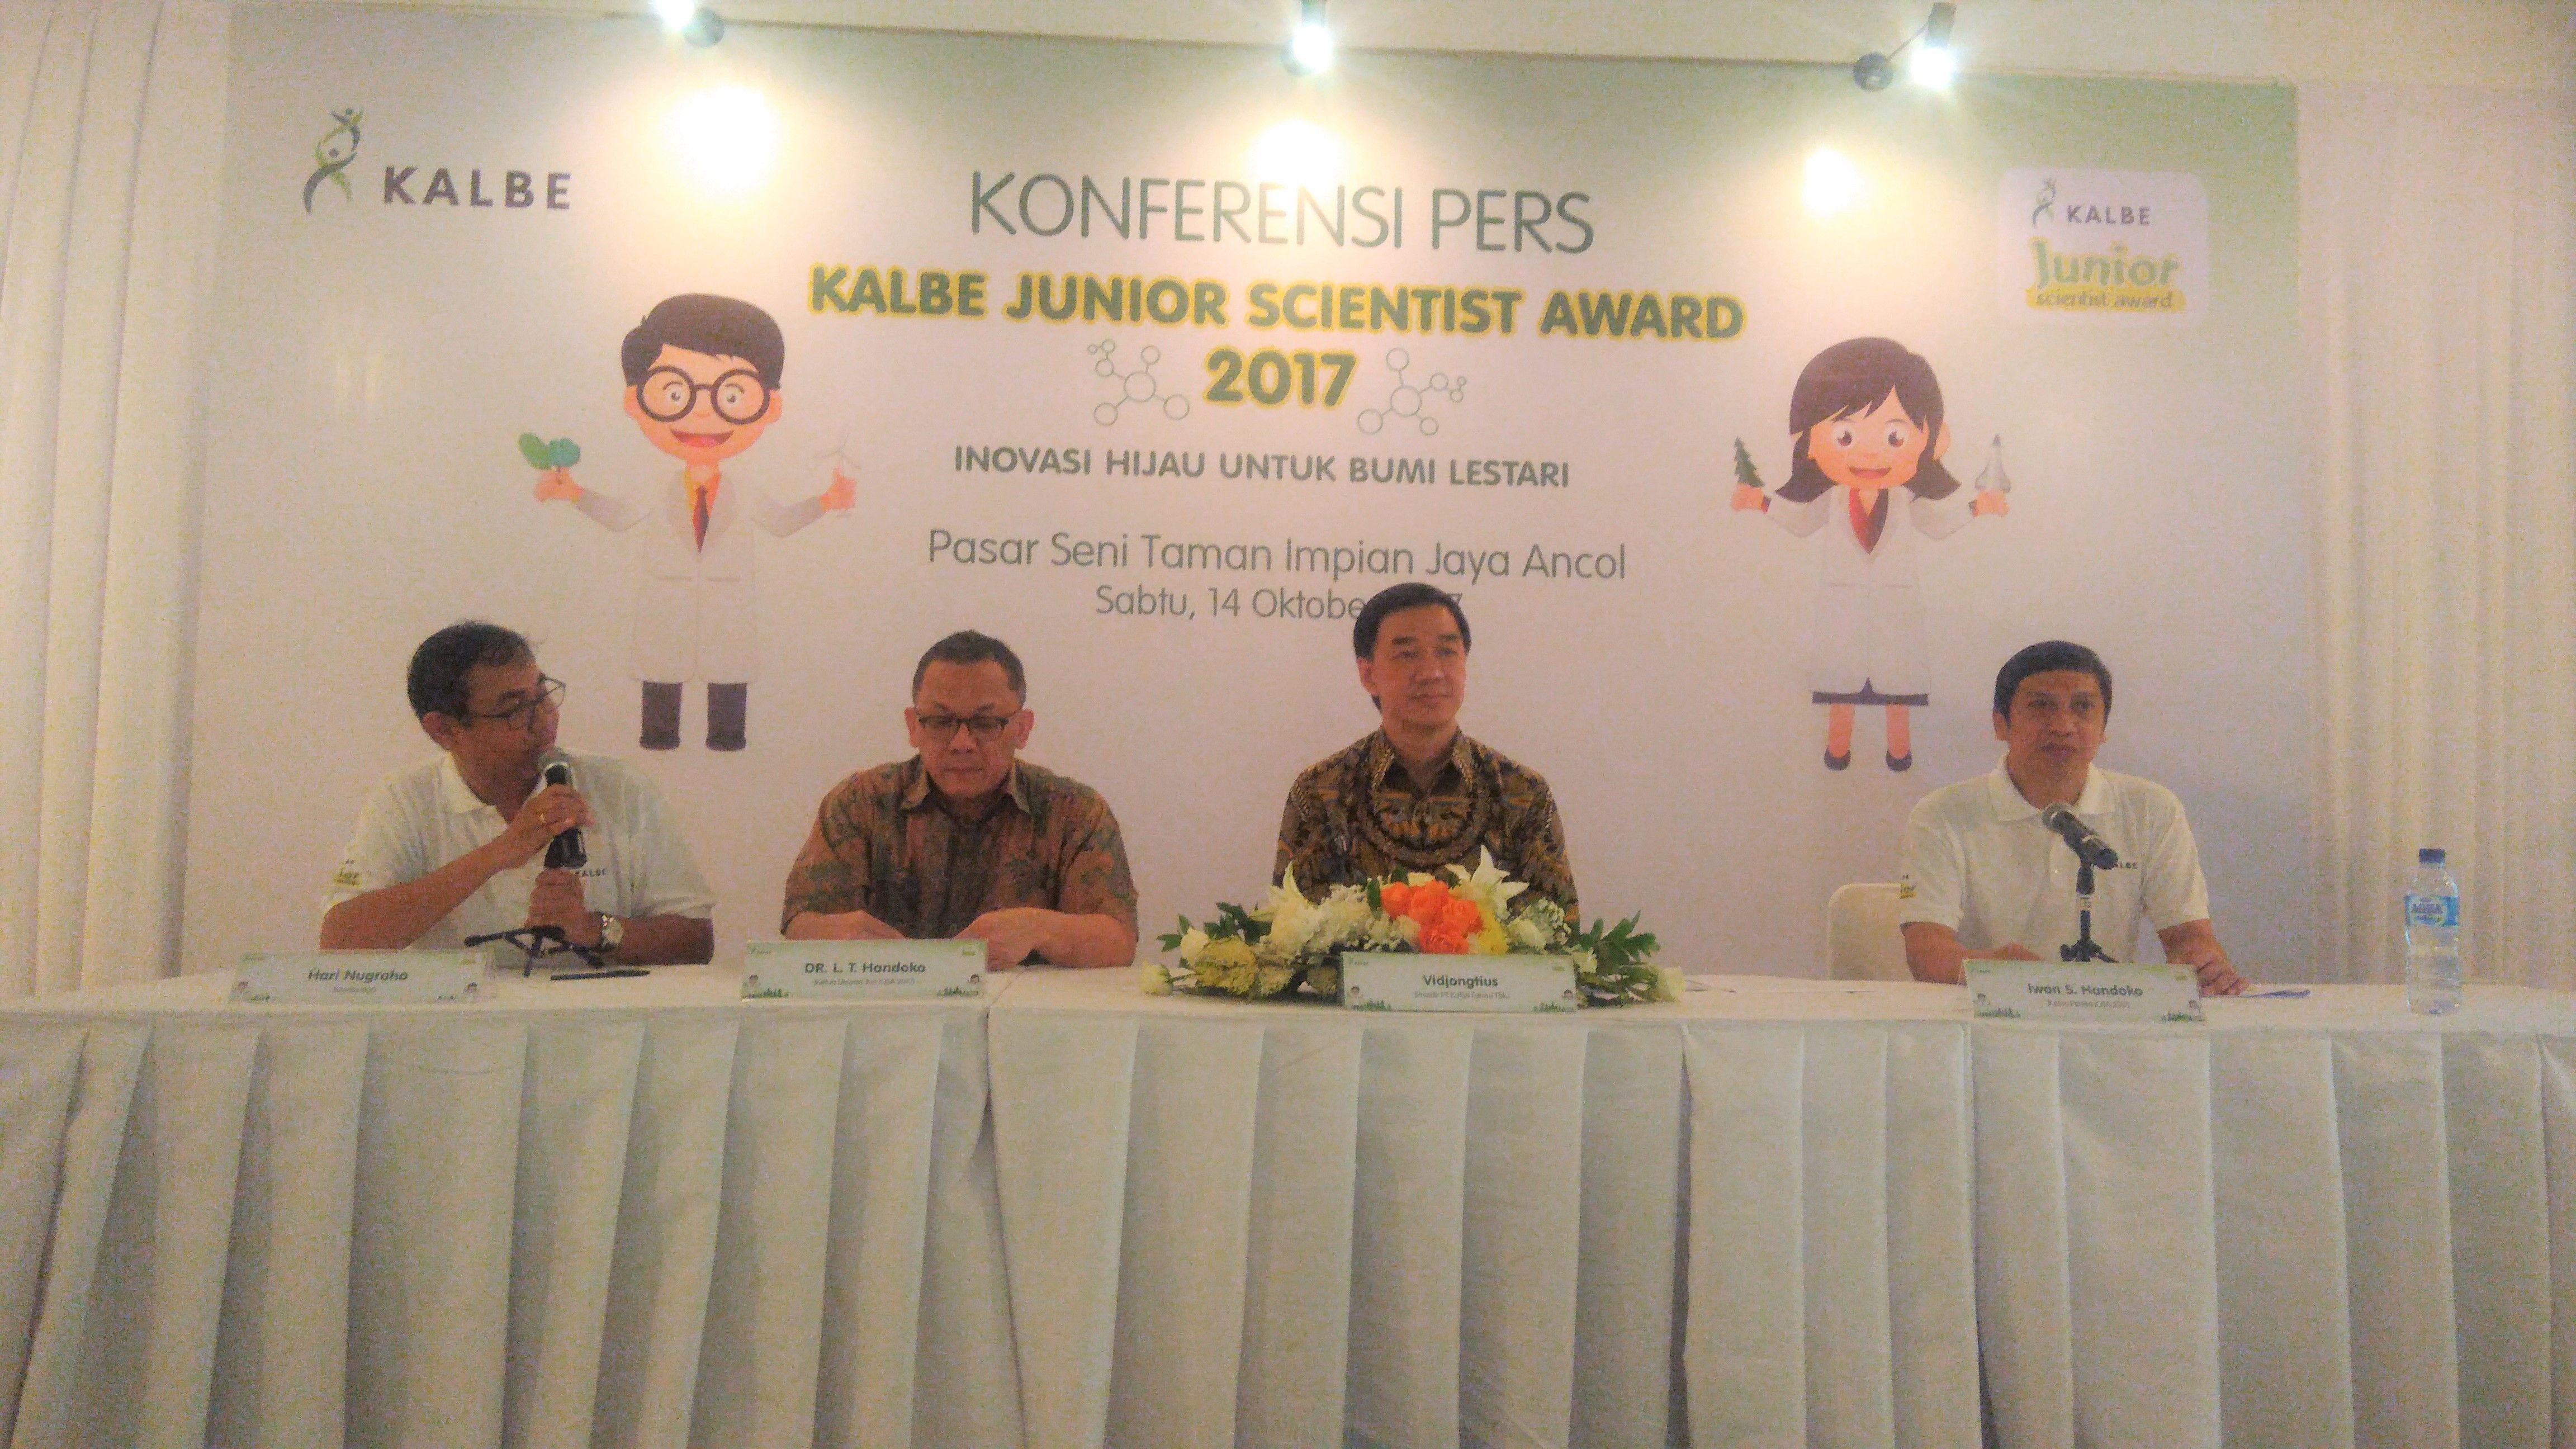 Kalbe Junior Scientist Award 2017 Tumbuhkan Minat Sains Siswa